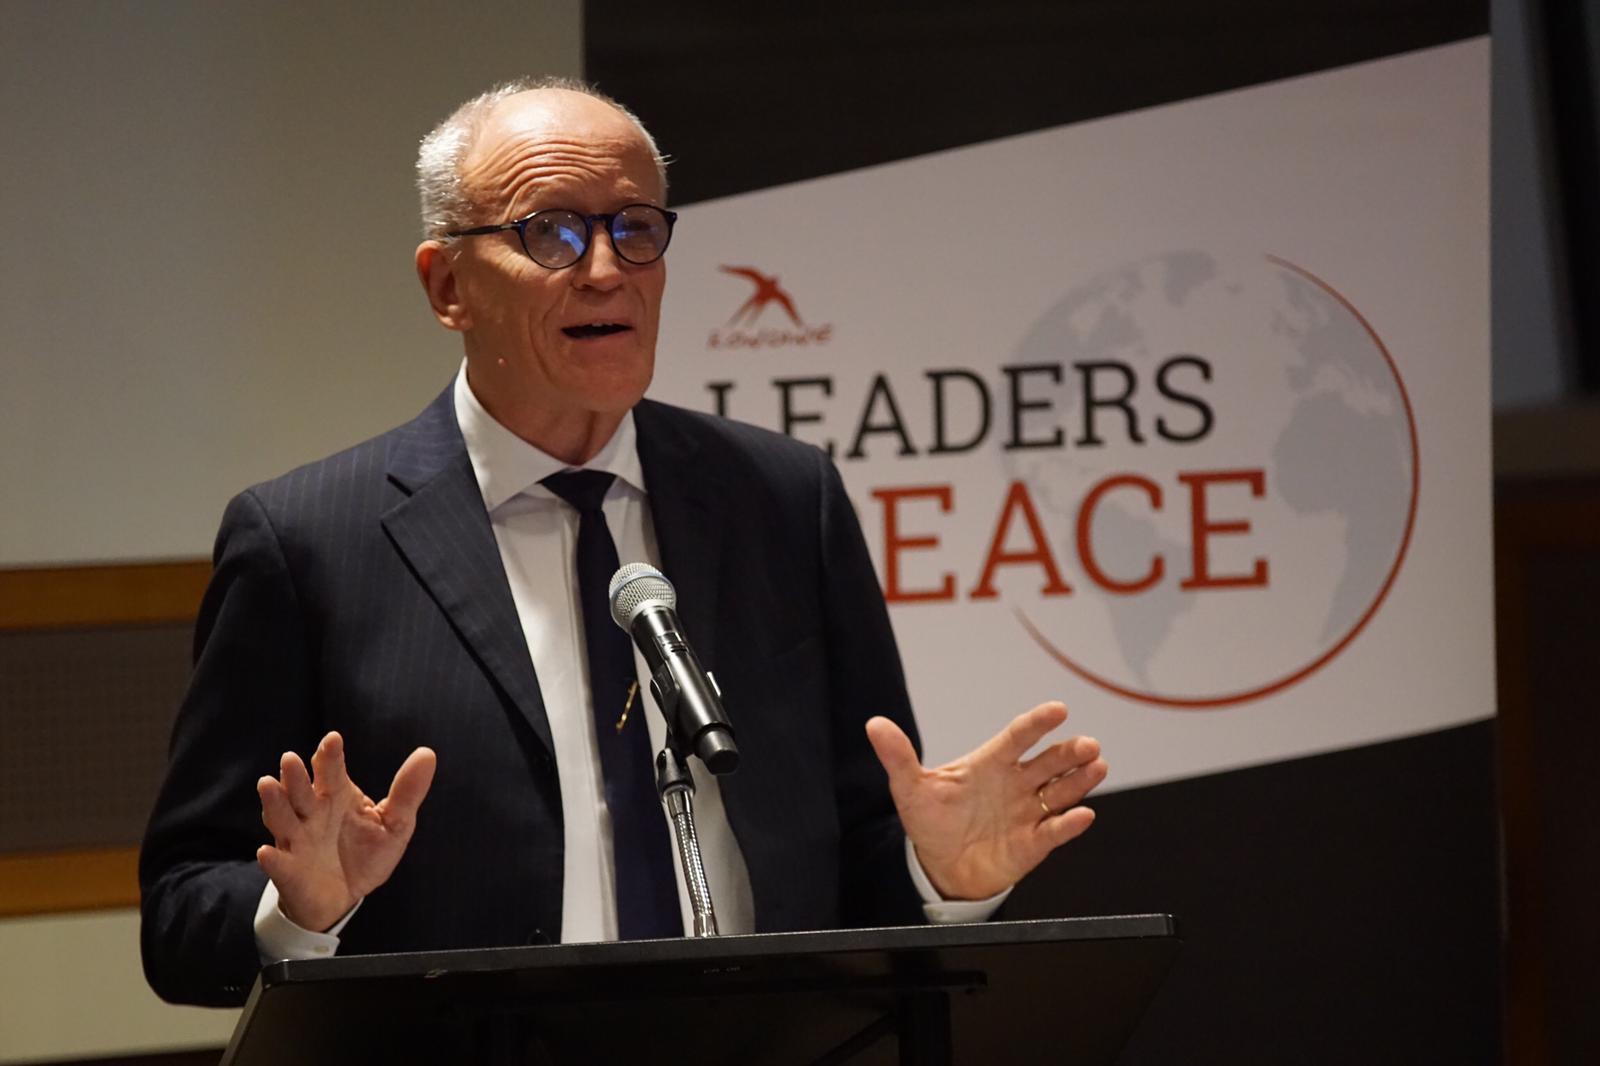 La nuova sfida di Rondine all’Onu: coinvolgere gli Stati nella creazione di un modello di leadership di pace